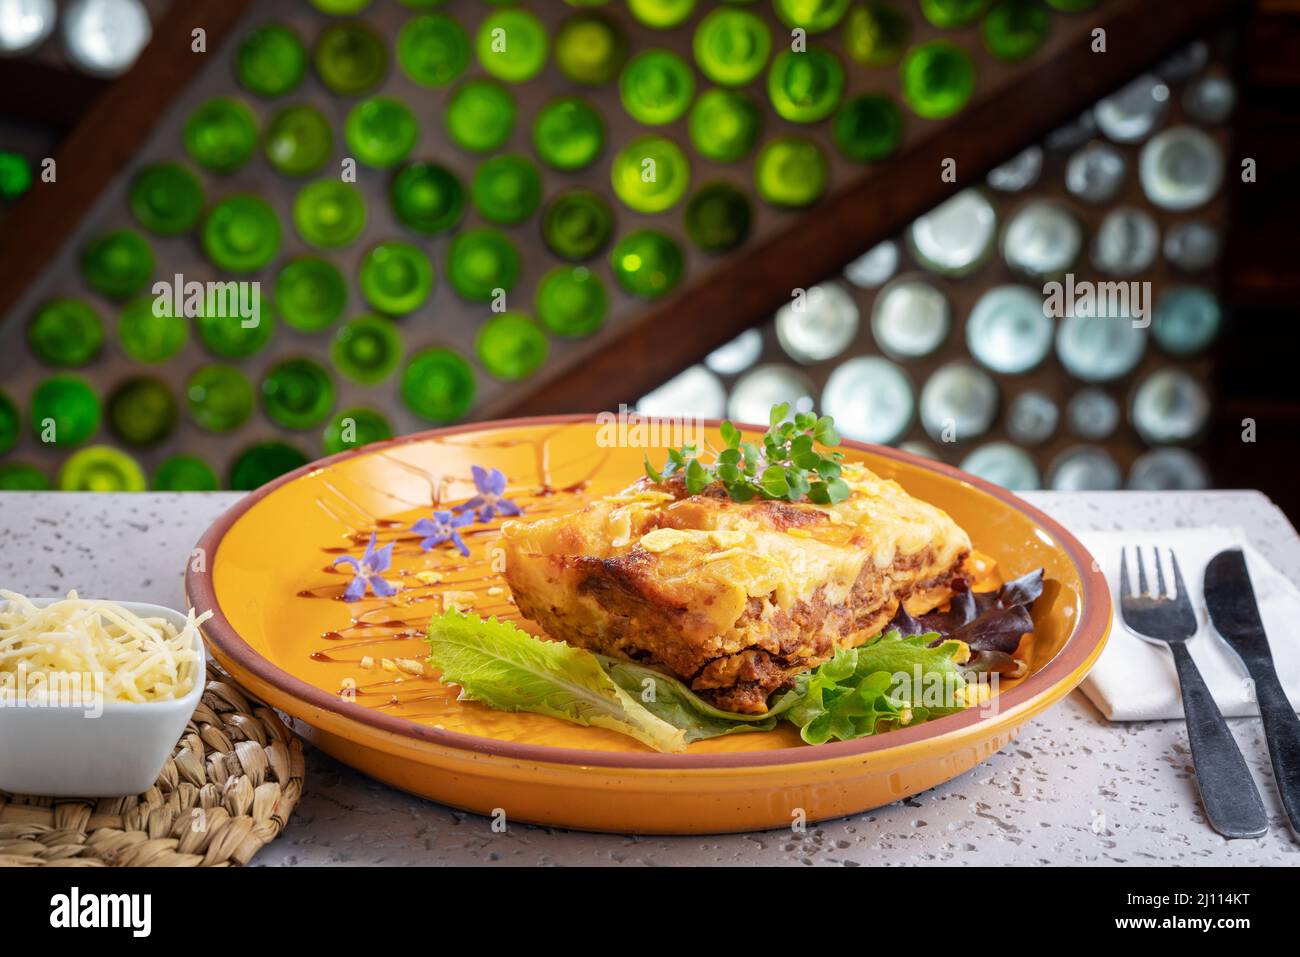 lasagnes sur une assiette orange accompagnées de feuilles de laitue, de cresson et de fleurs violettes. Banque D'Images